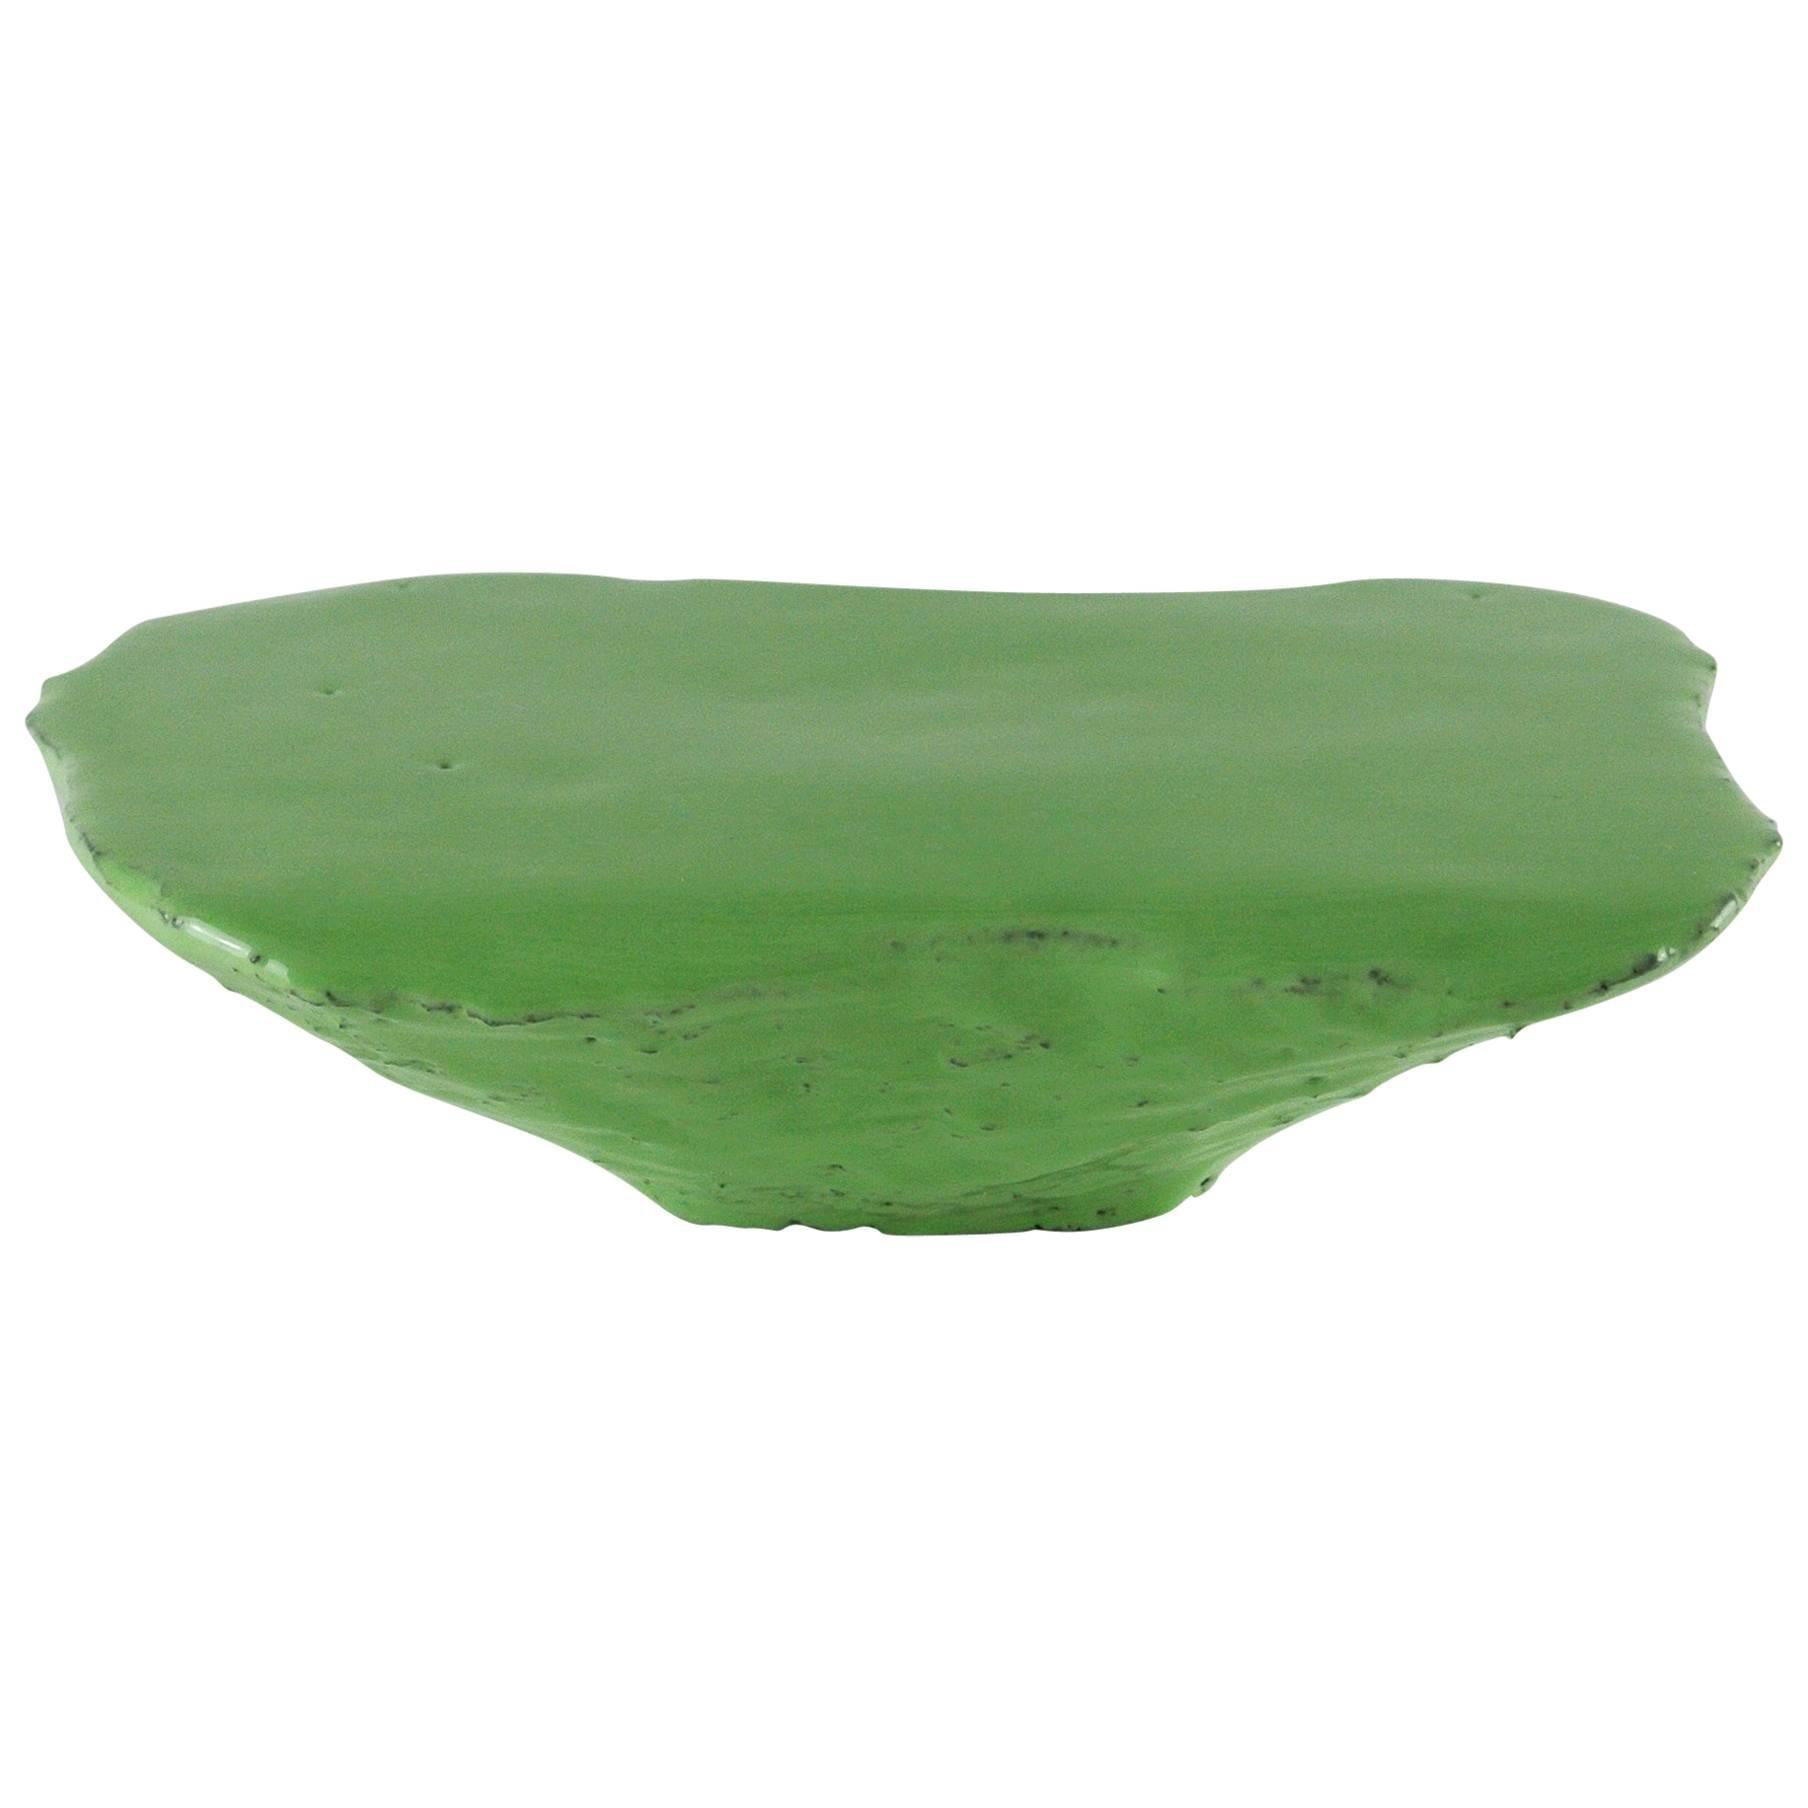 Grey Stoneware Platform with Lichen Green Glaze and Black Fire Sand Texture